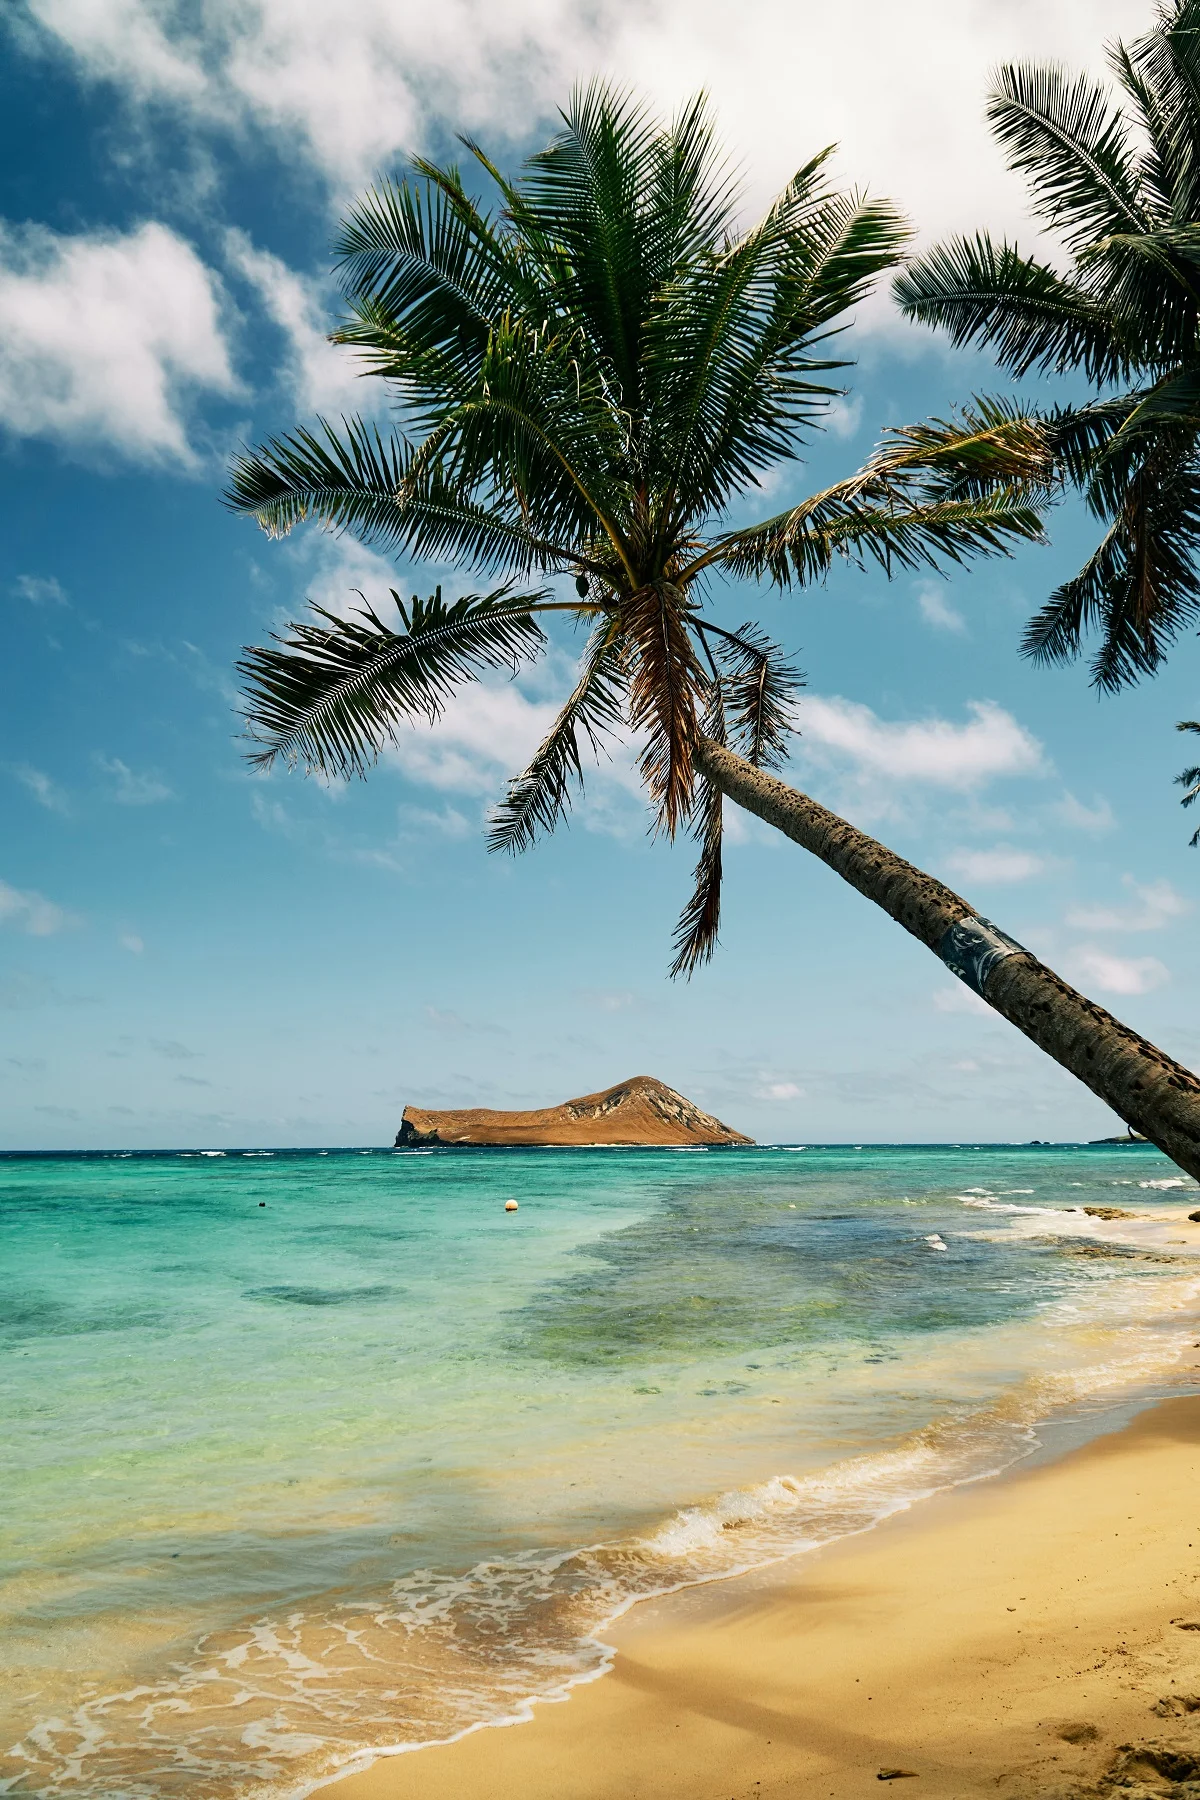 Райське місце: на Гаваях почнуть роздавати гроші, аби жителі ходили у ресторани - фото 492944